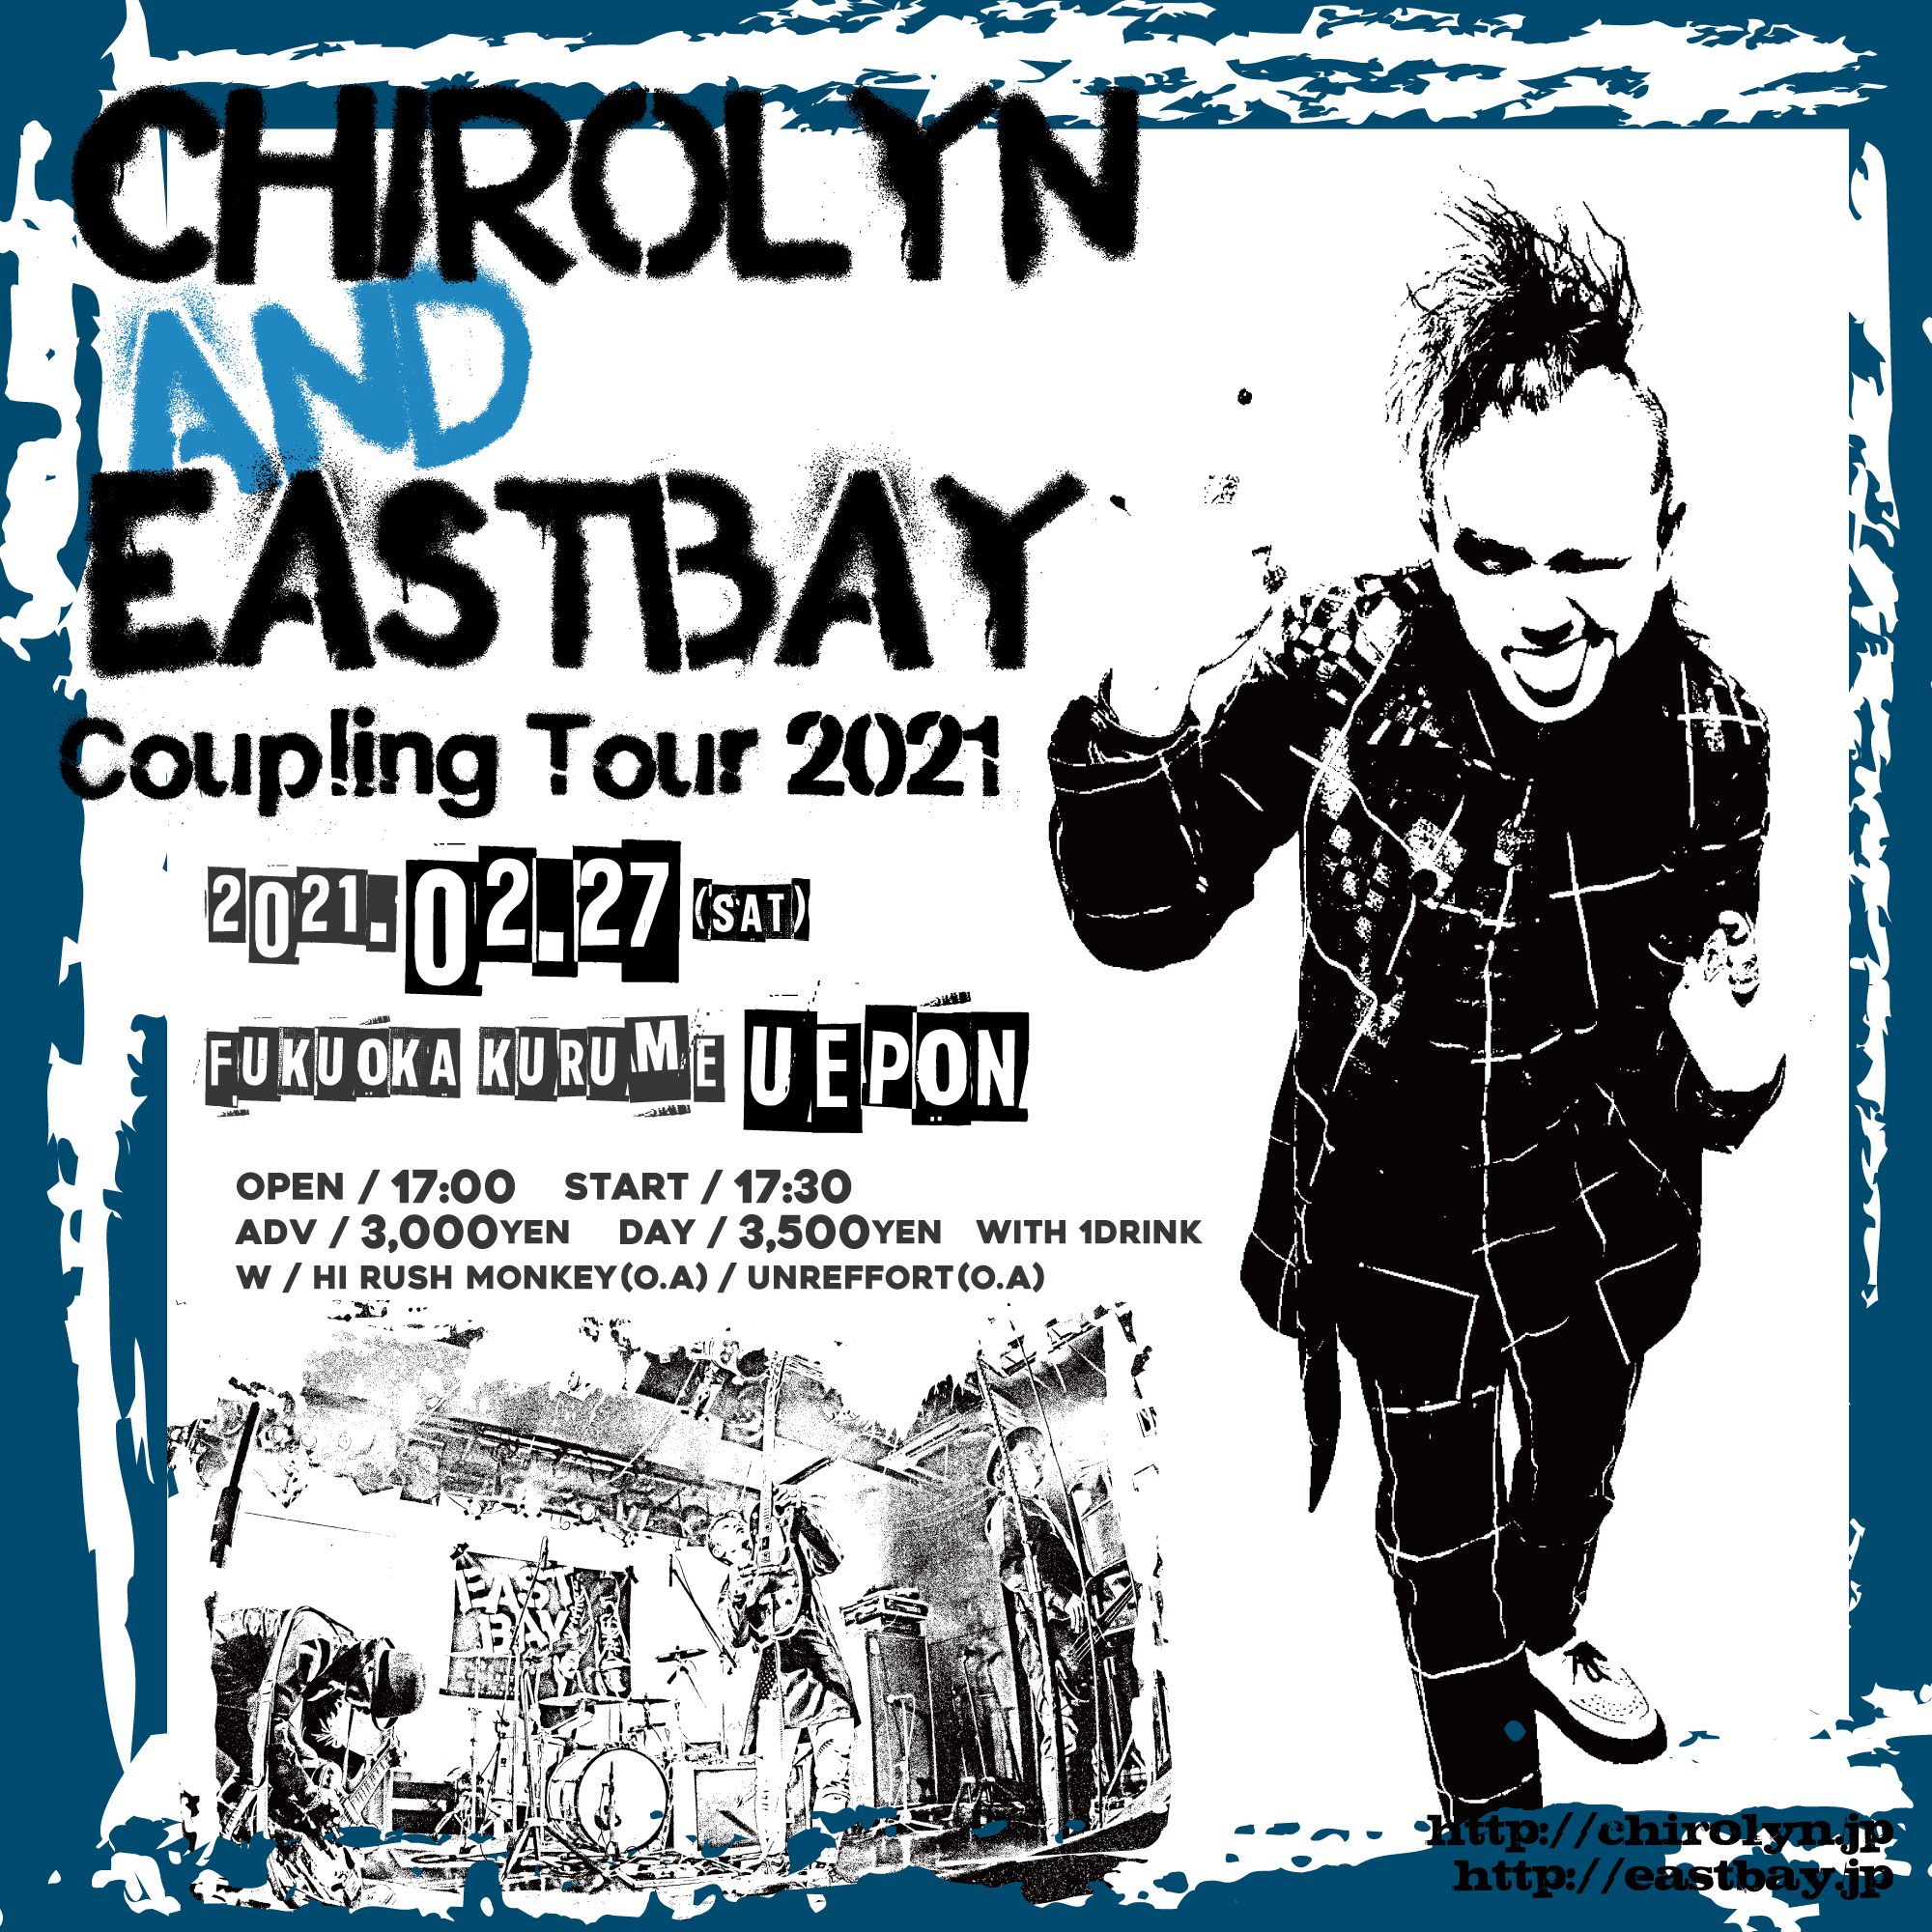 【中止】Chirolyn & EASTBAY Coupling Tour 2021 in 久留米の写真